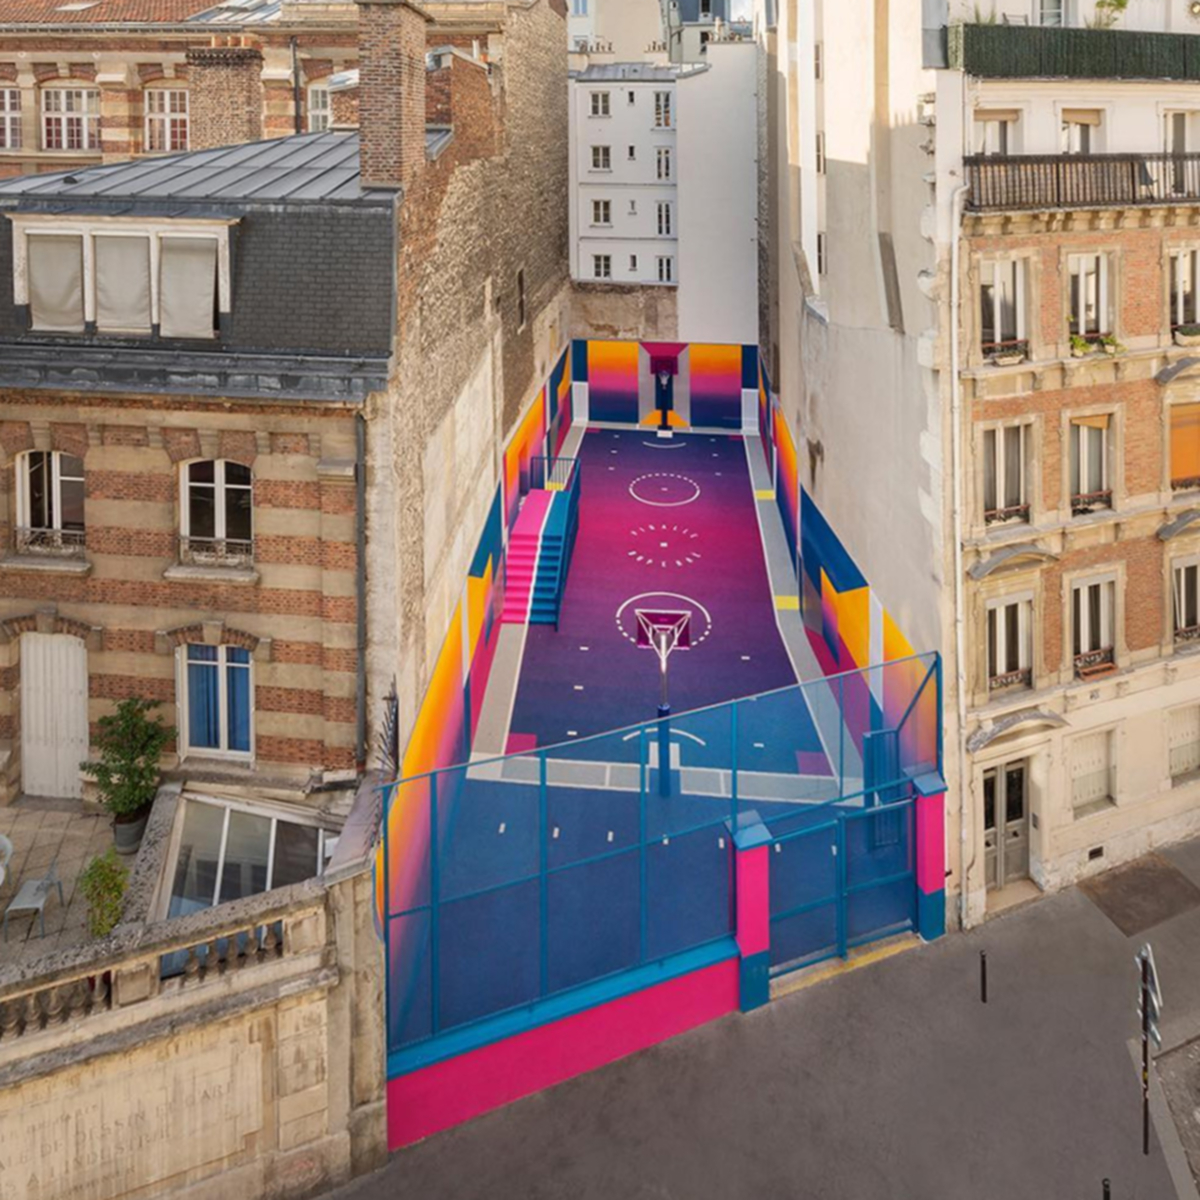 Paris’teki renkli basketbol sahası canlı renklerle güncellendi